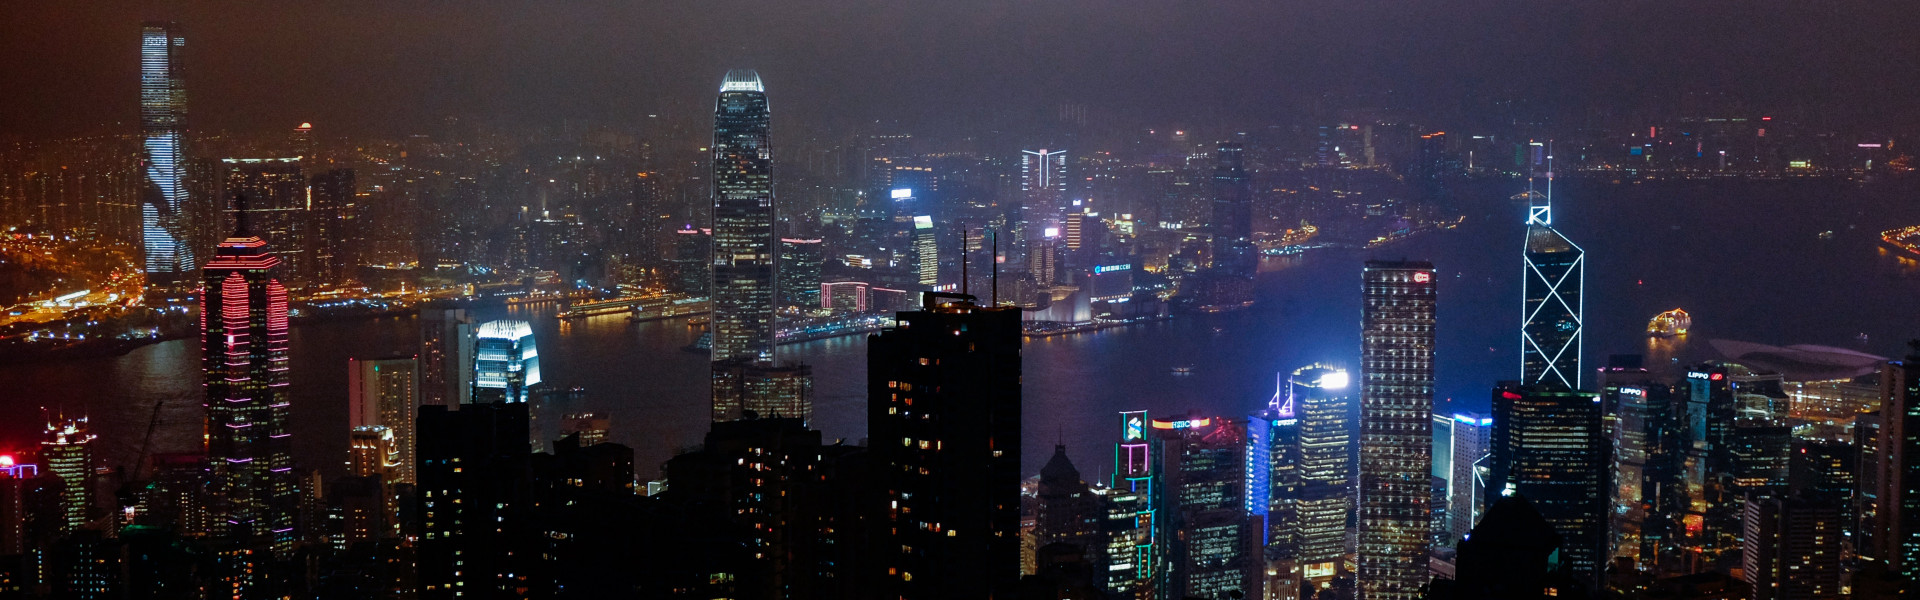 Destination image of Hong Kong